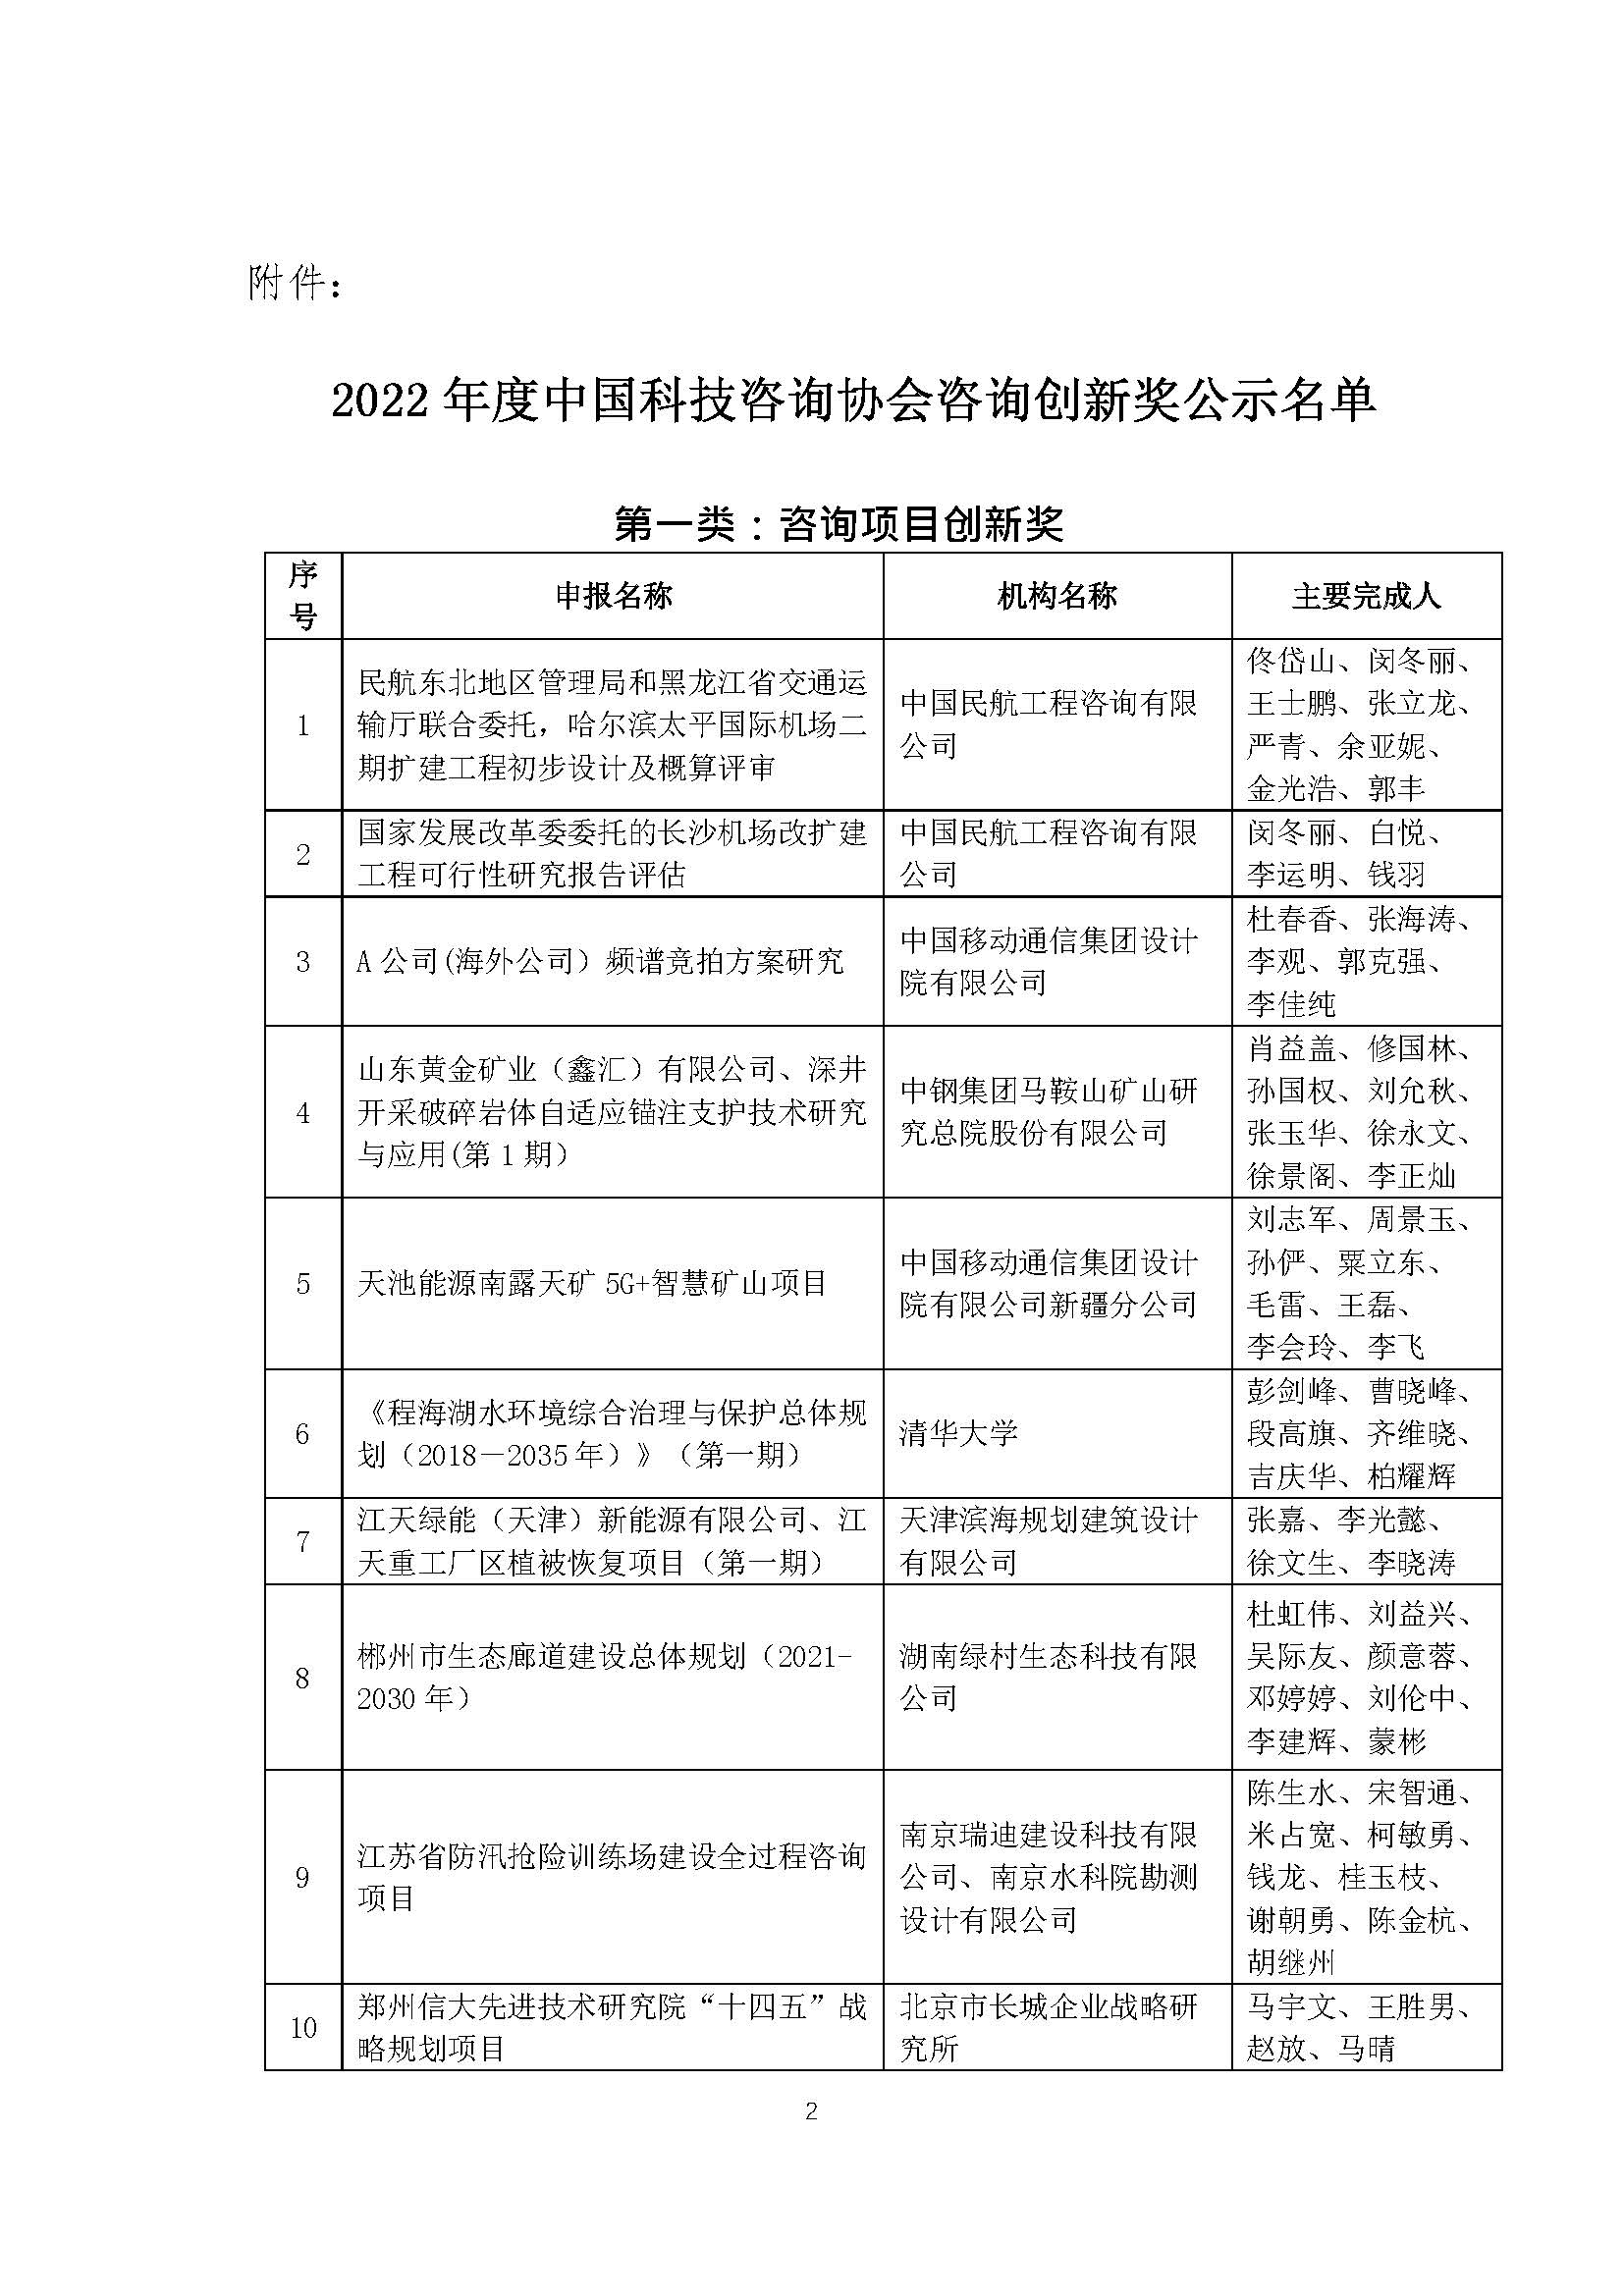 关于2022年度中国科技咨询协会咨询创新奖获奖名单公示的通知_页面_2.jpg